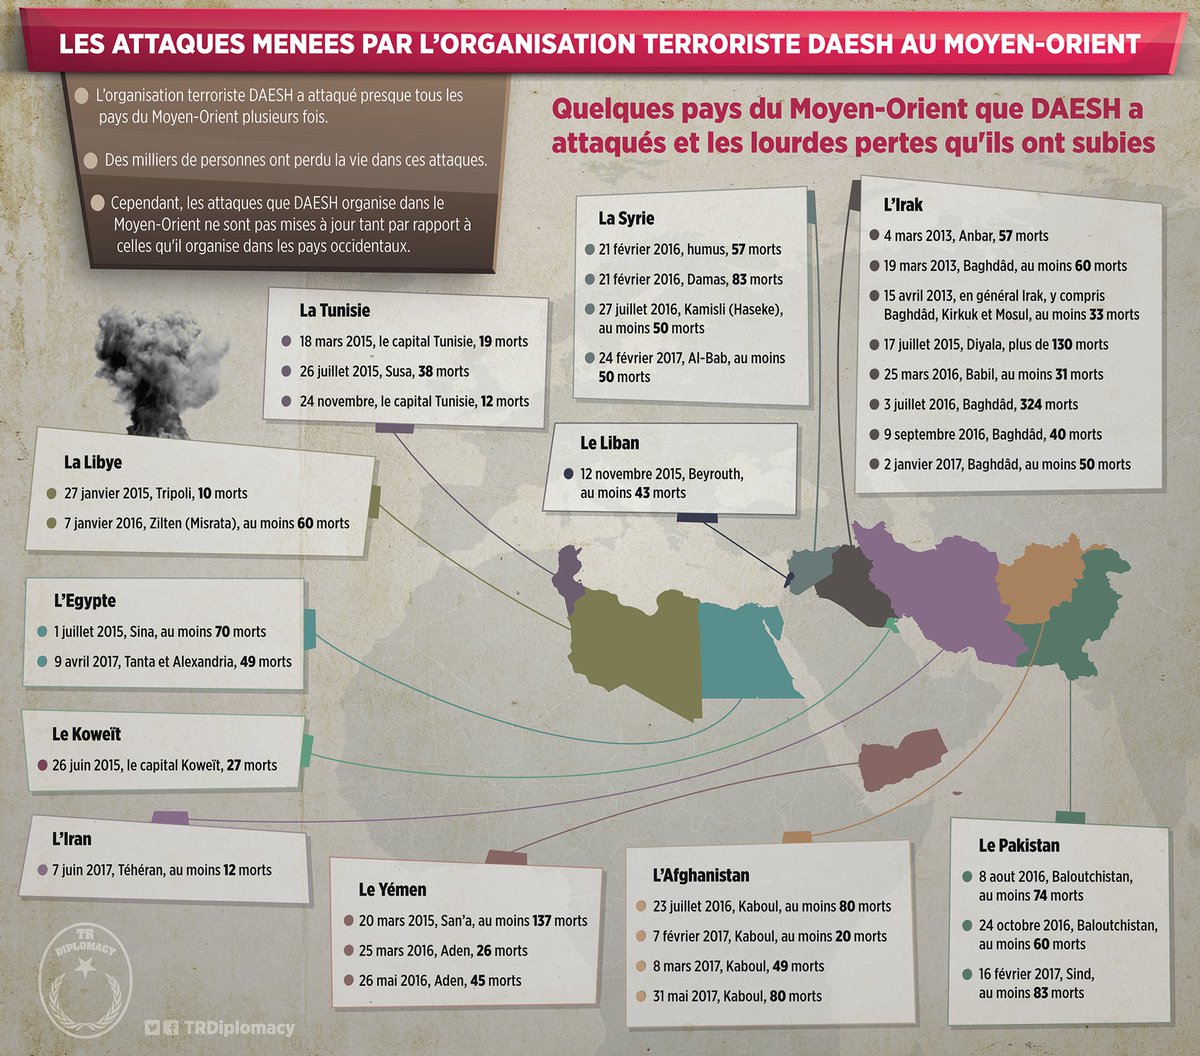 Les attaques suicidaires de DAESH dans les pays du Moyen-Orient